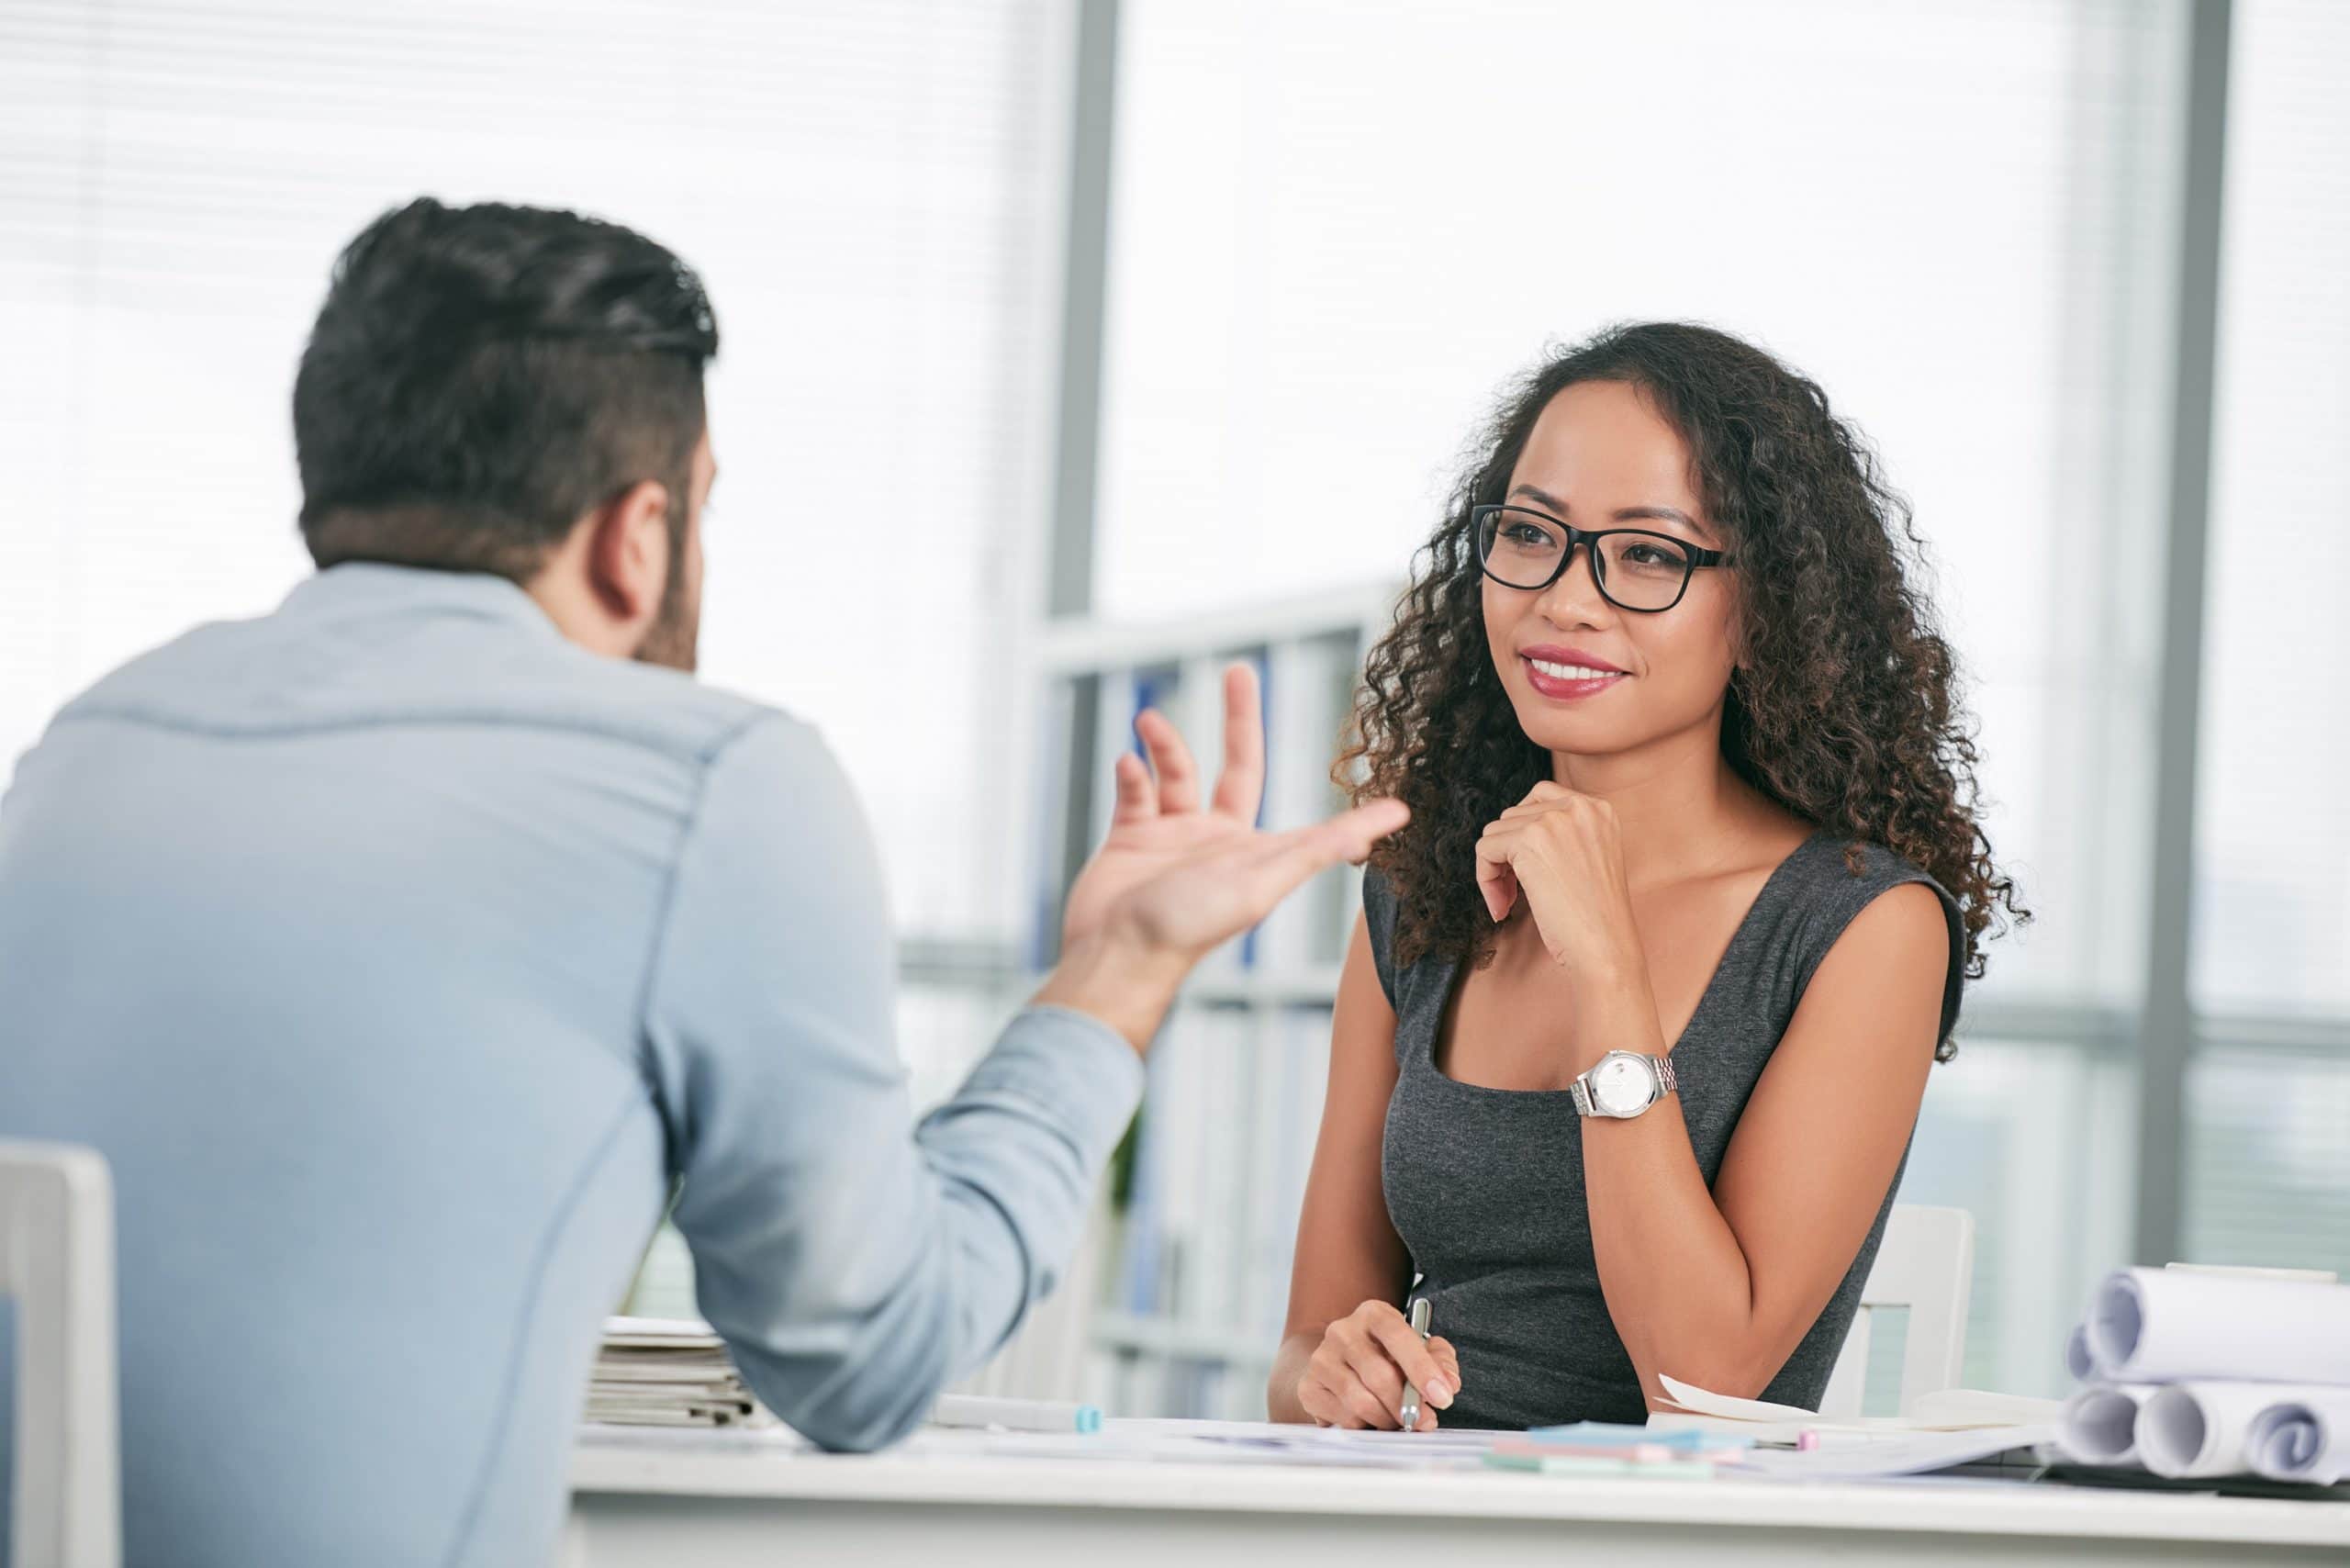 3 Coisas importantes que devem ser consideradas durante as entrevistas de emprego